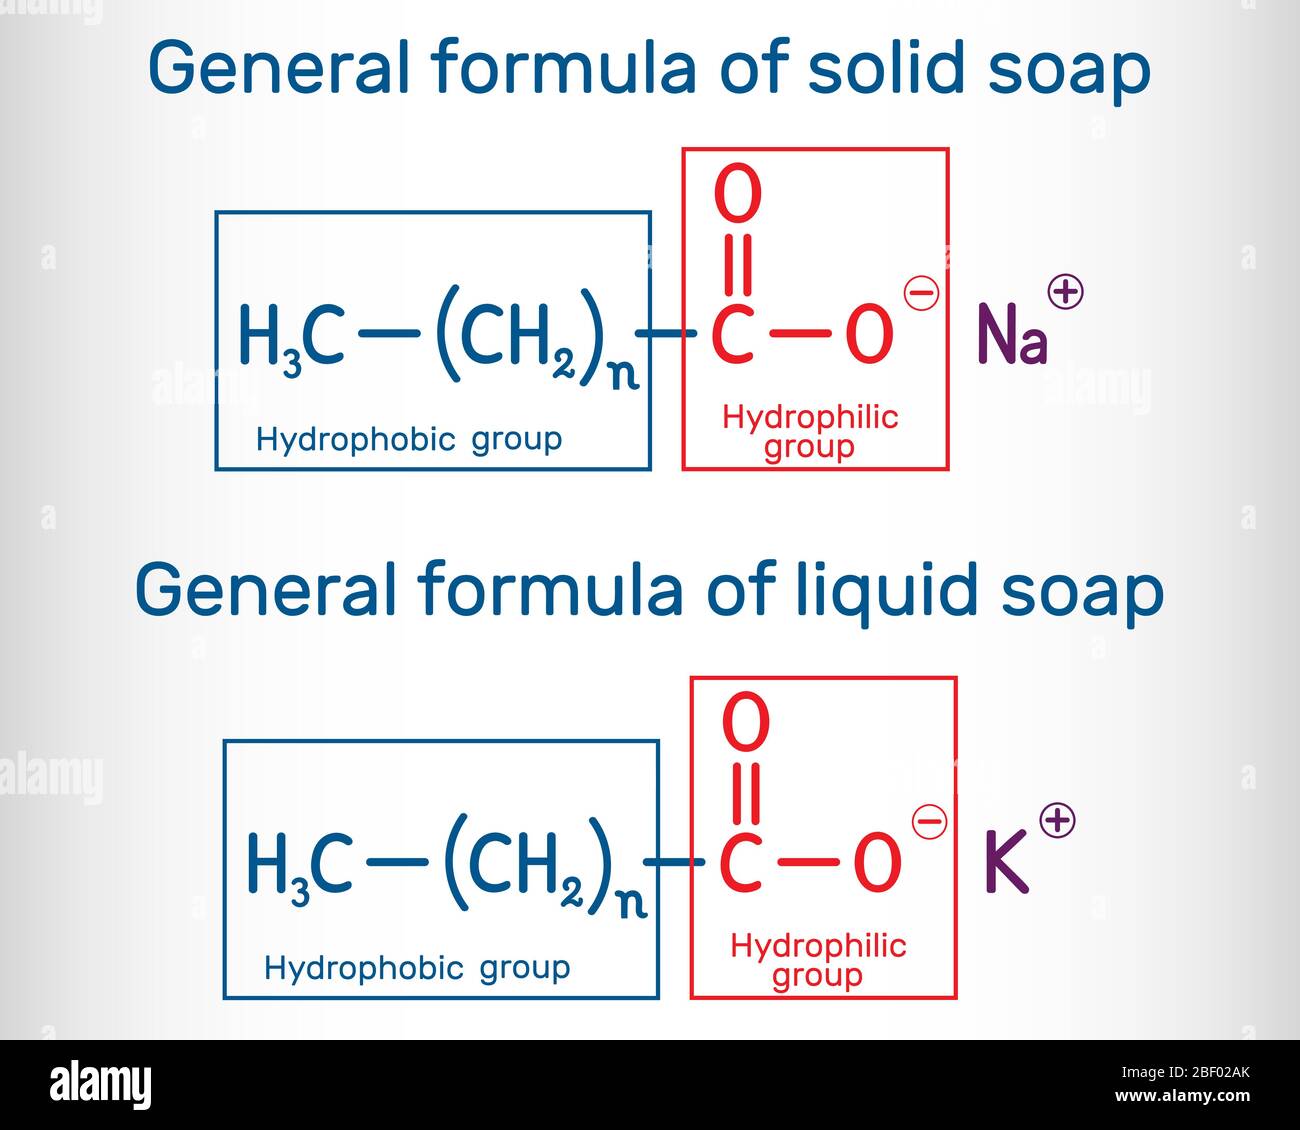 Formule générale de molécule de savon solide et liquide. RCOONa, RCOOK. Formule  chimique structurelle. Illustration vectorielle Image Vectorielle Stock -  Alamy